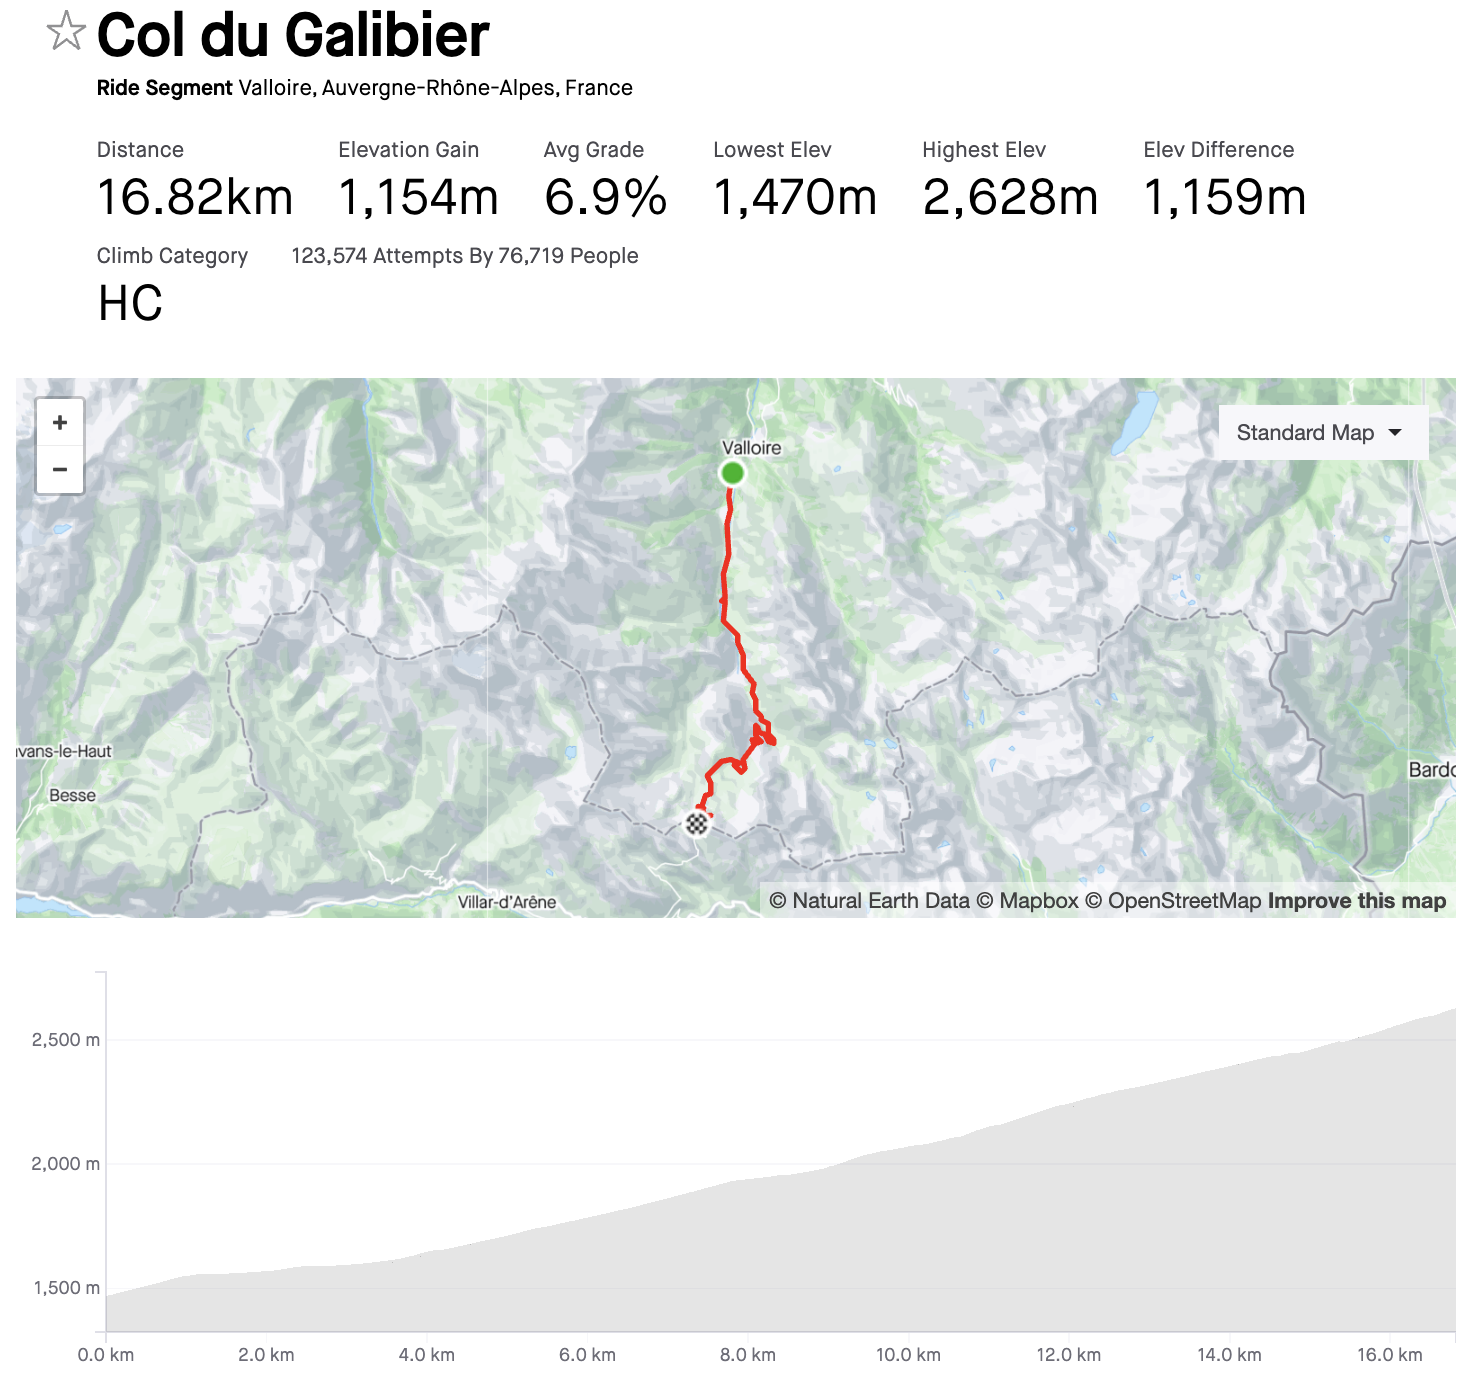 Tour de France 2023: Stage 6 Preview - Riders Face The Col du Tourmalet